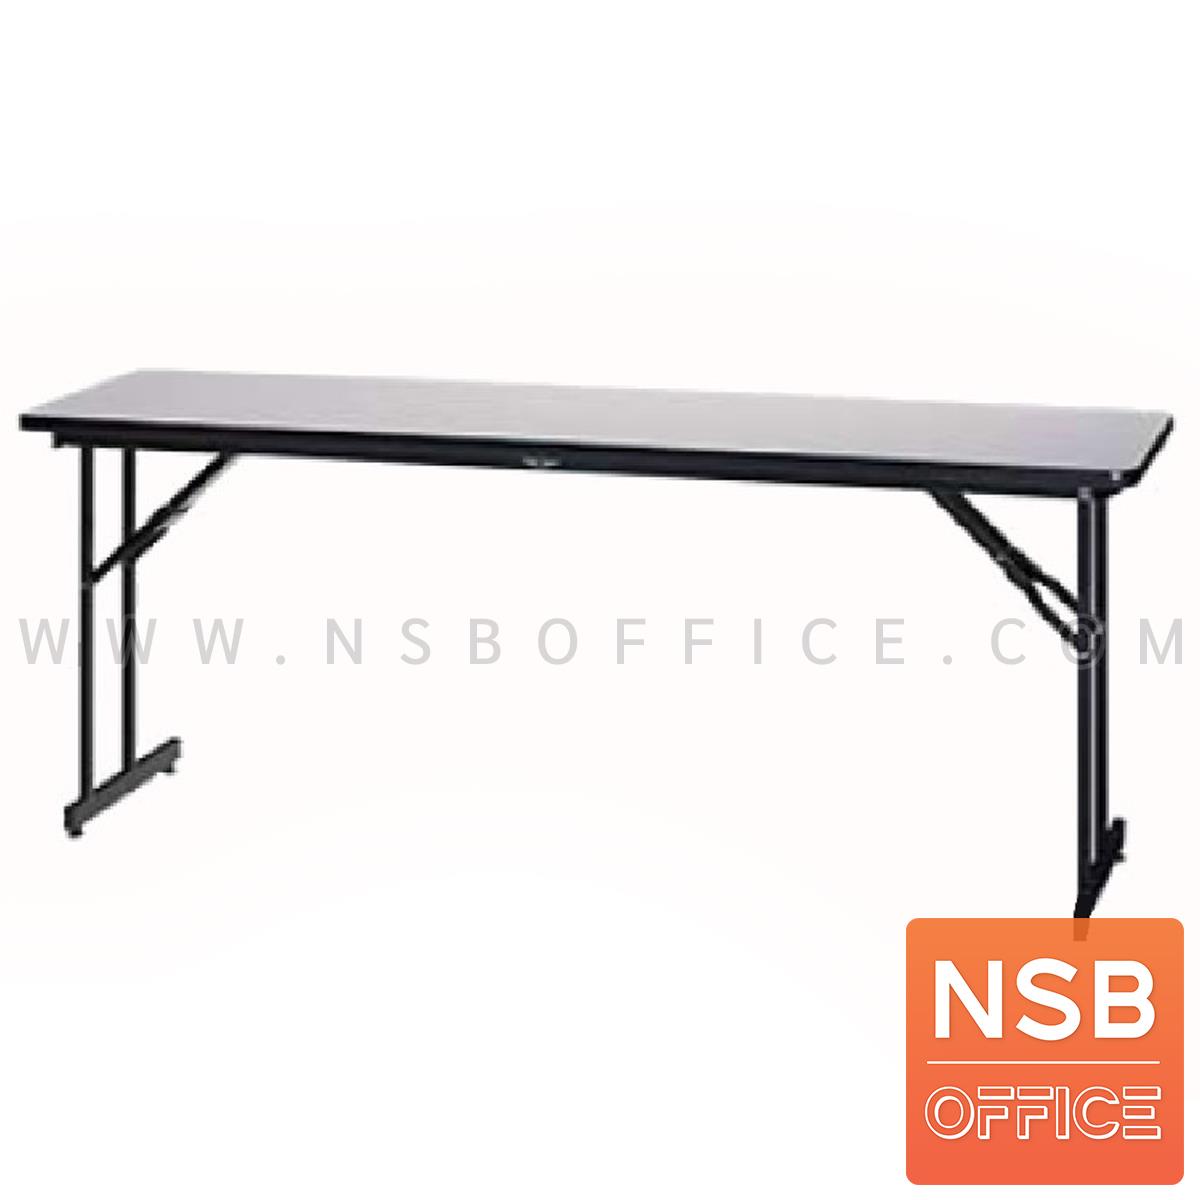 E28A168:โต๊ะพับหน้าลามิเนต  รุ่น TFN-45180, TFN-60180 ขนาด 180W cm. แข็งแรงพิเศษ